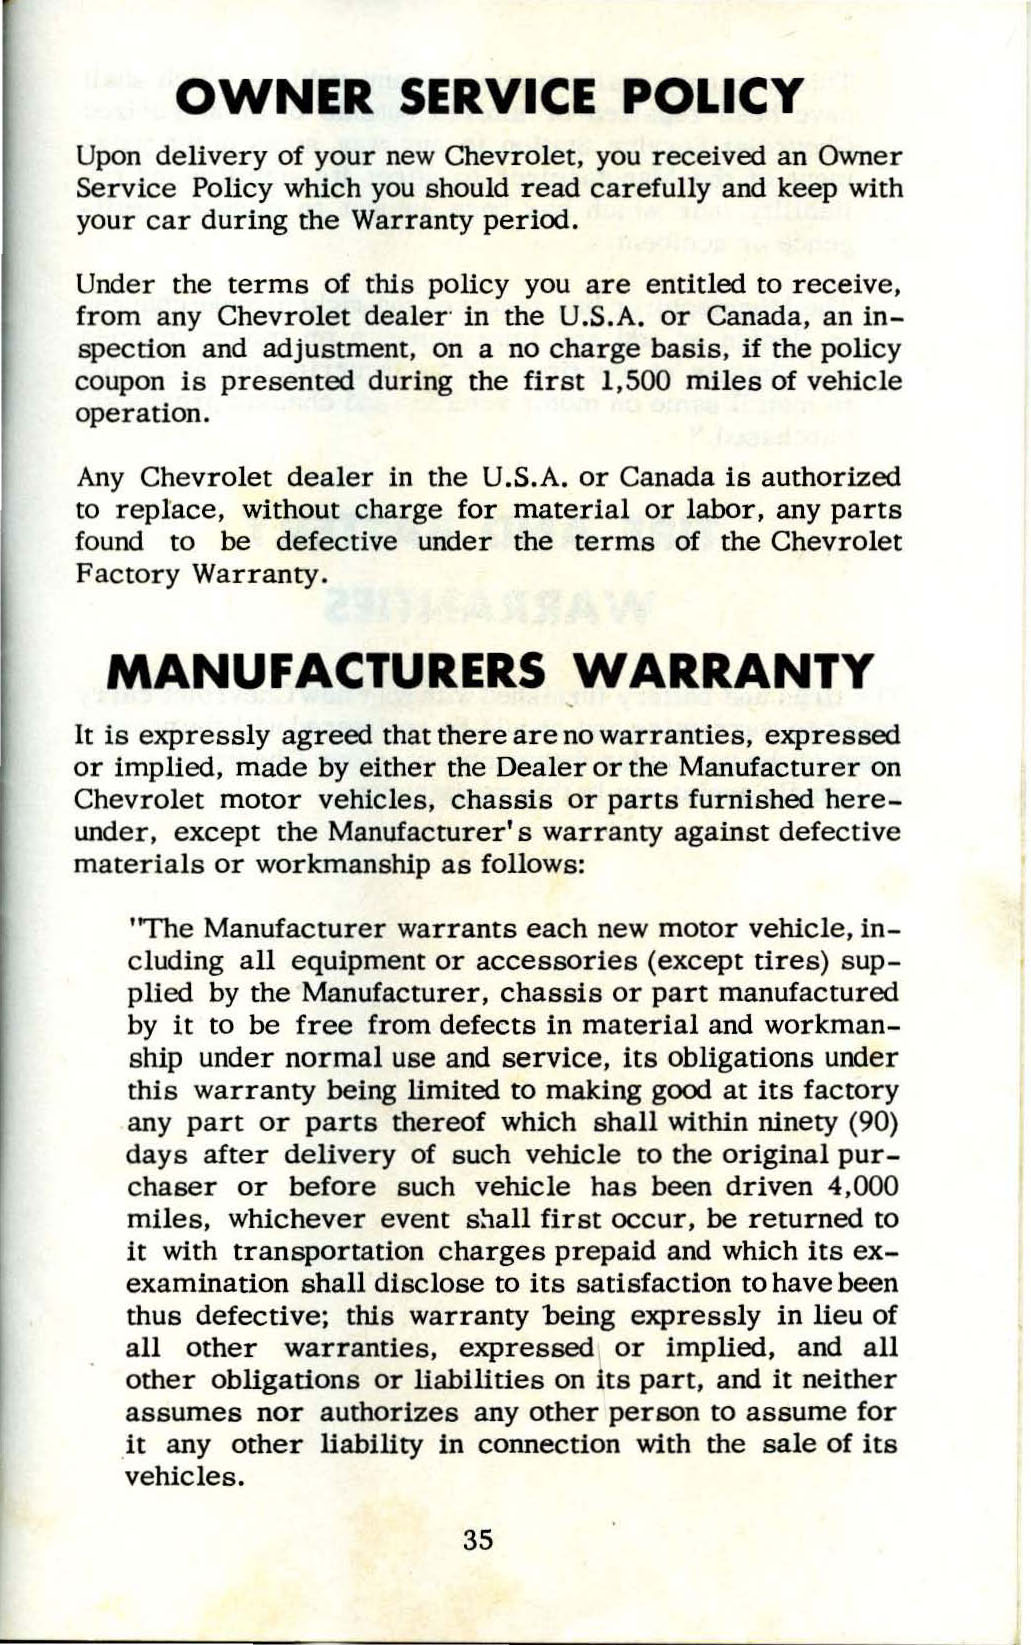 1953_Corvette_Owners_Manual-35